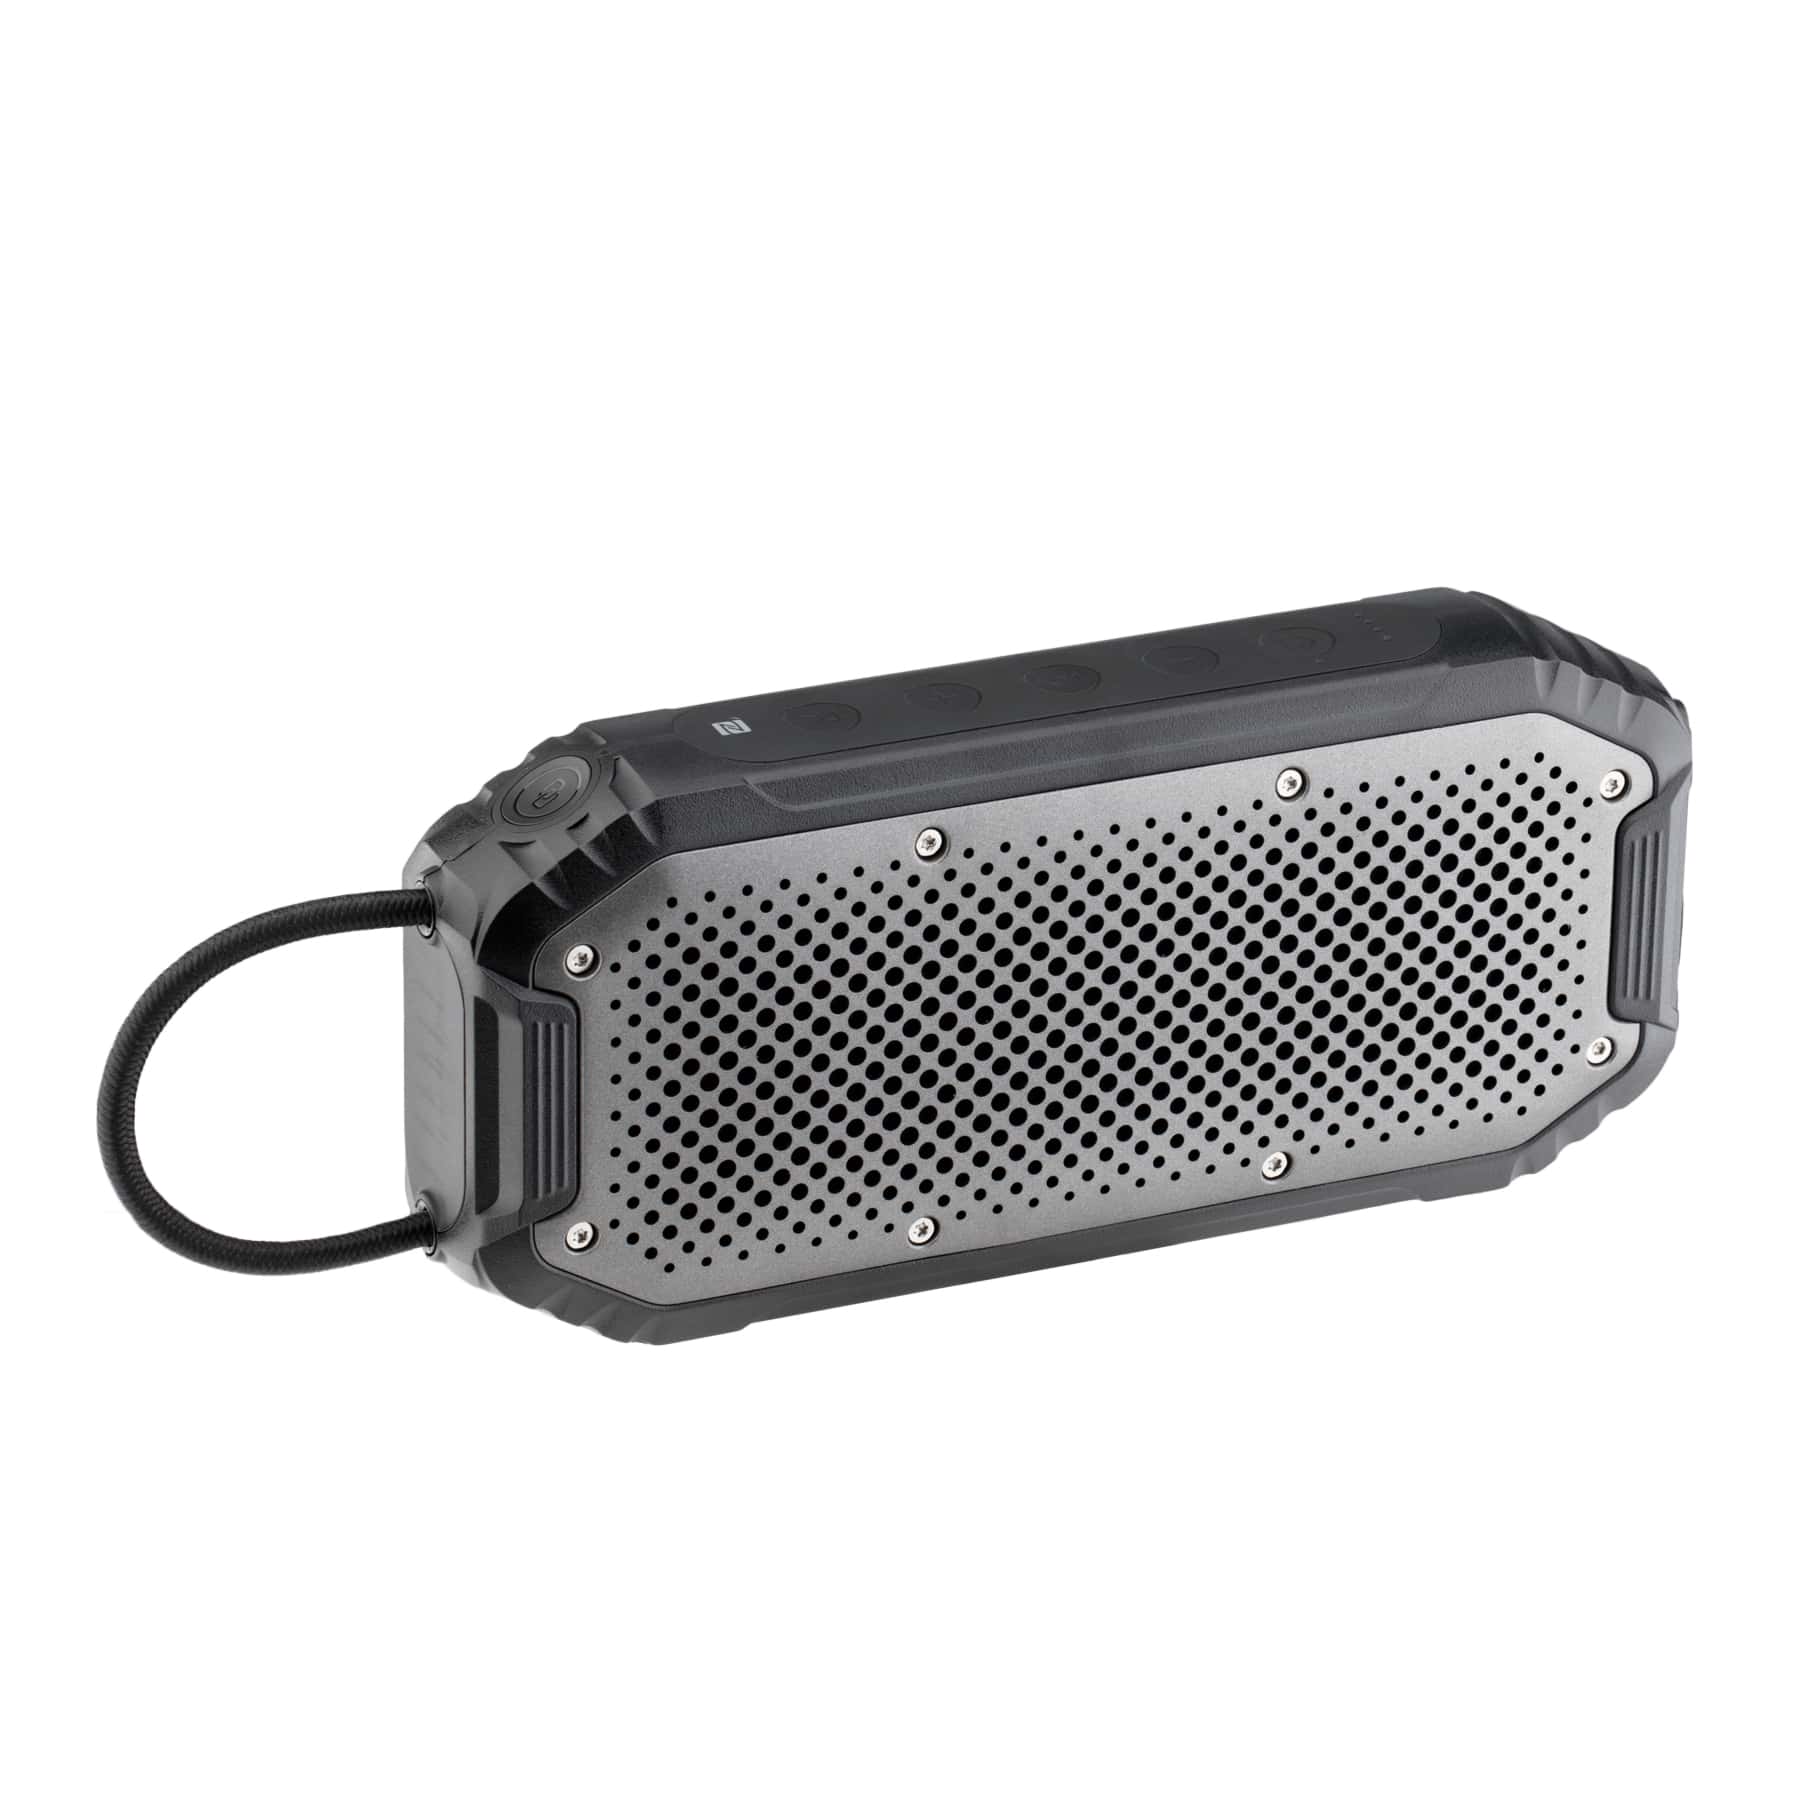 Wave Portable Speaker - Outdoor Series II